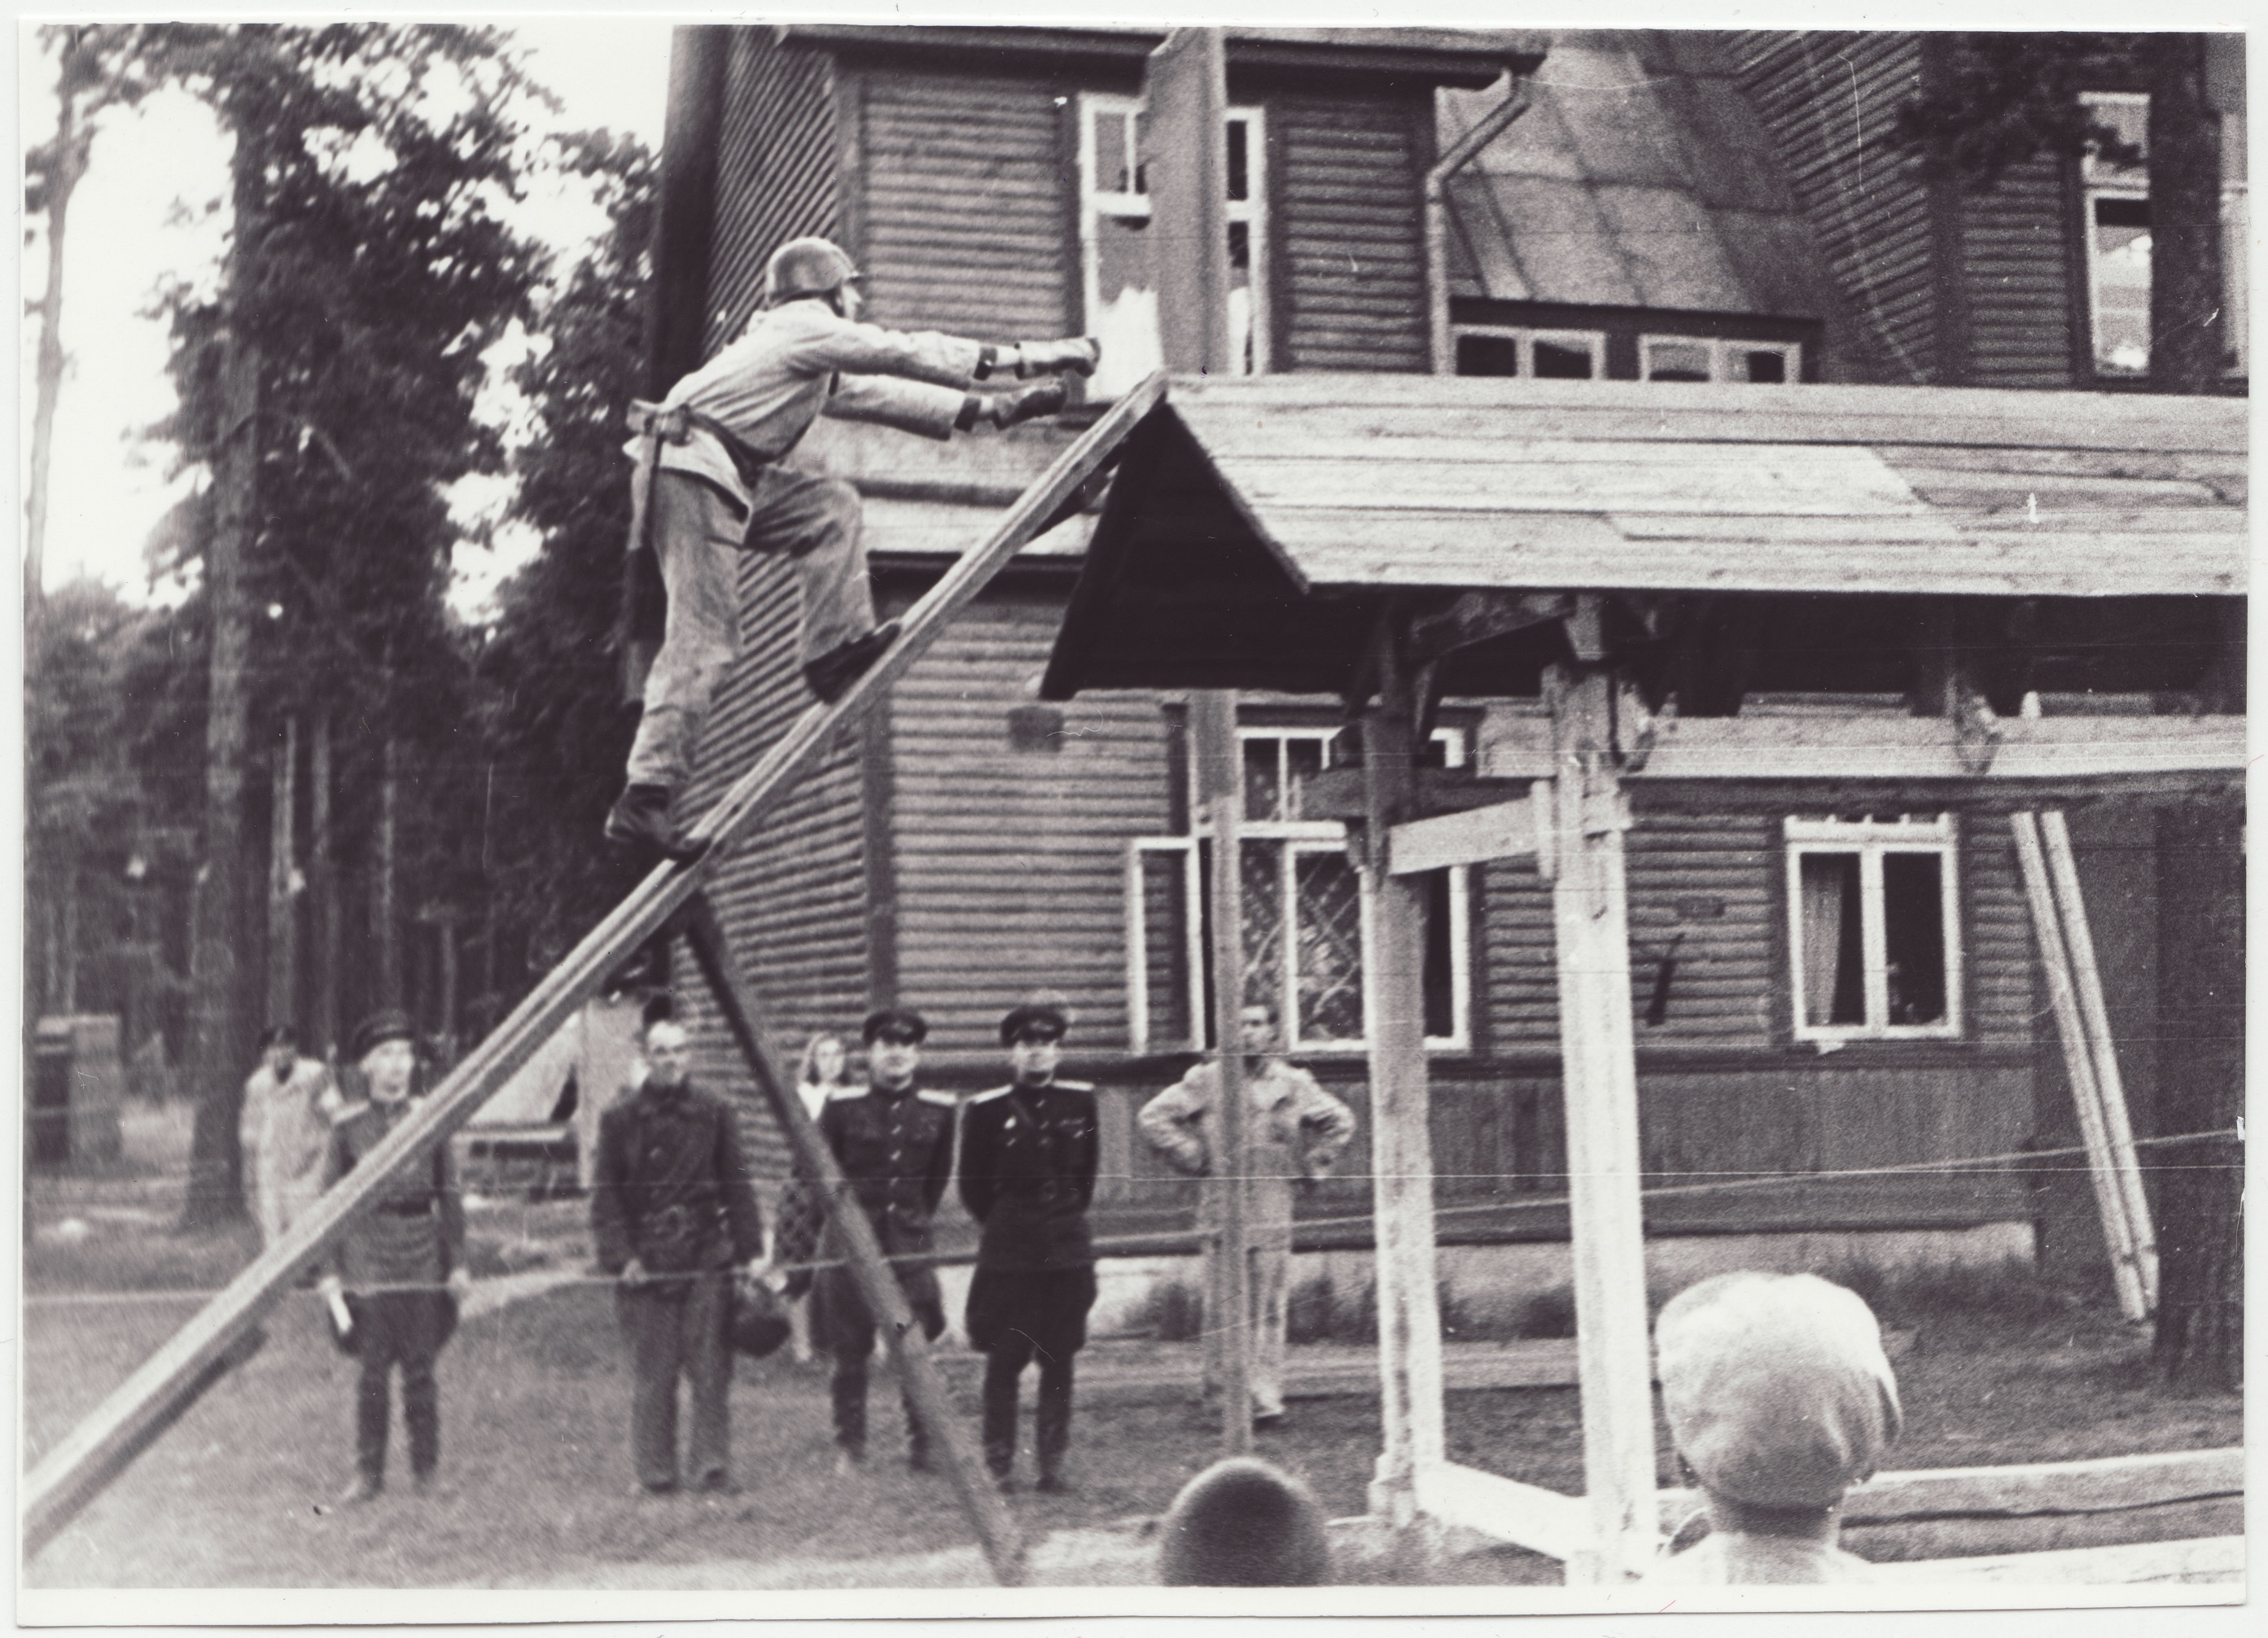 Komandodevahelised tuletõrjevõistlused Tallinnas: 4x100 takistusteatejooksu esimene etapp, 1950.a.